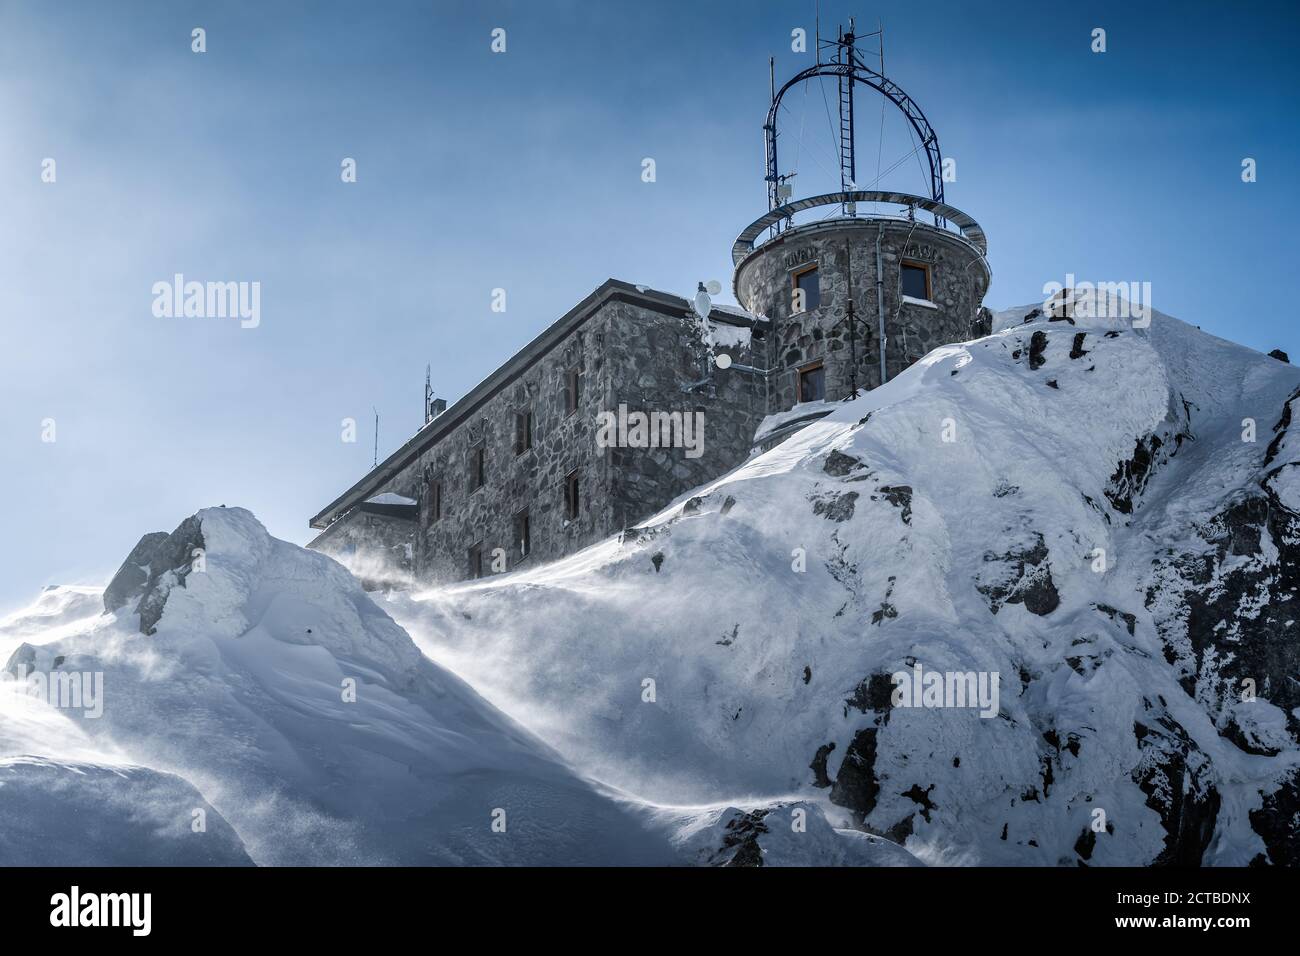 Wetterstation mit Sendeantennen auf dem Gipfel des Berges Kasprowy Wierch bei rauen Winterbedingungen, Polen Stockfoto